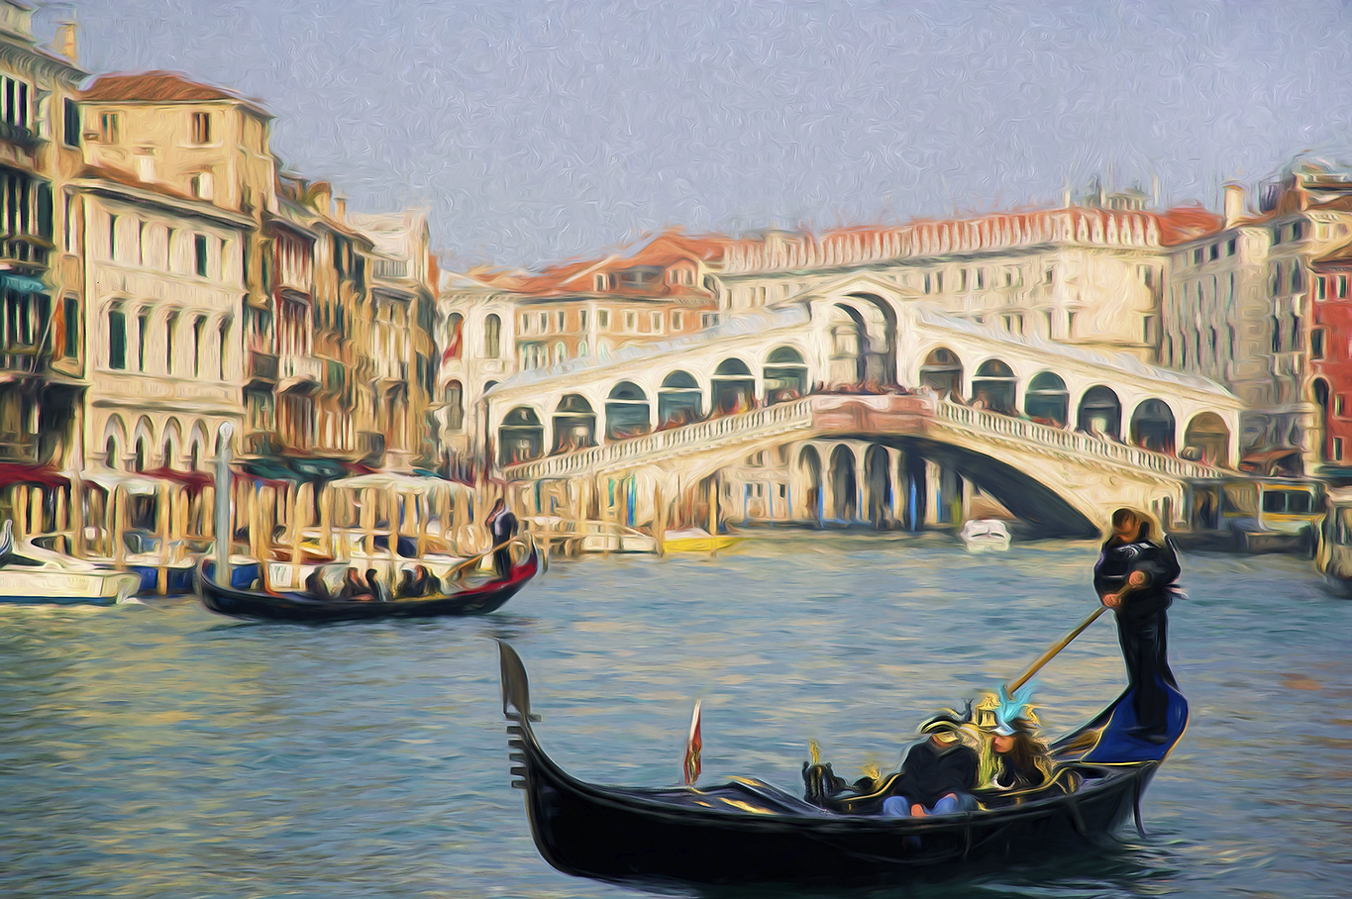 Venedig-Rialto-Bruecke-Gondeln-venezianische-Fotokunst-Fotomalerei-BXO1I5538-a.jpg